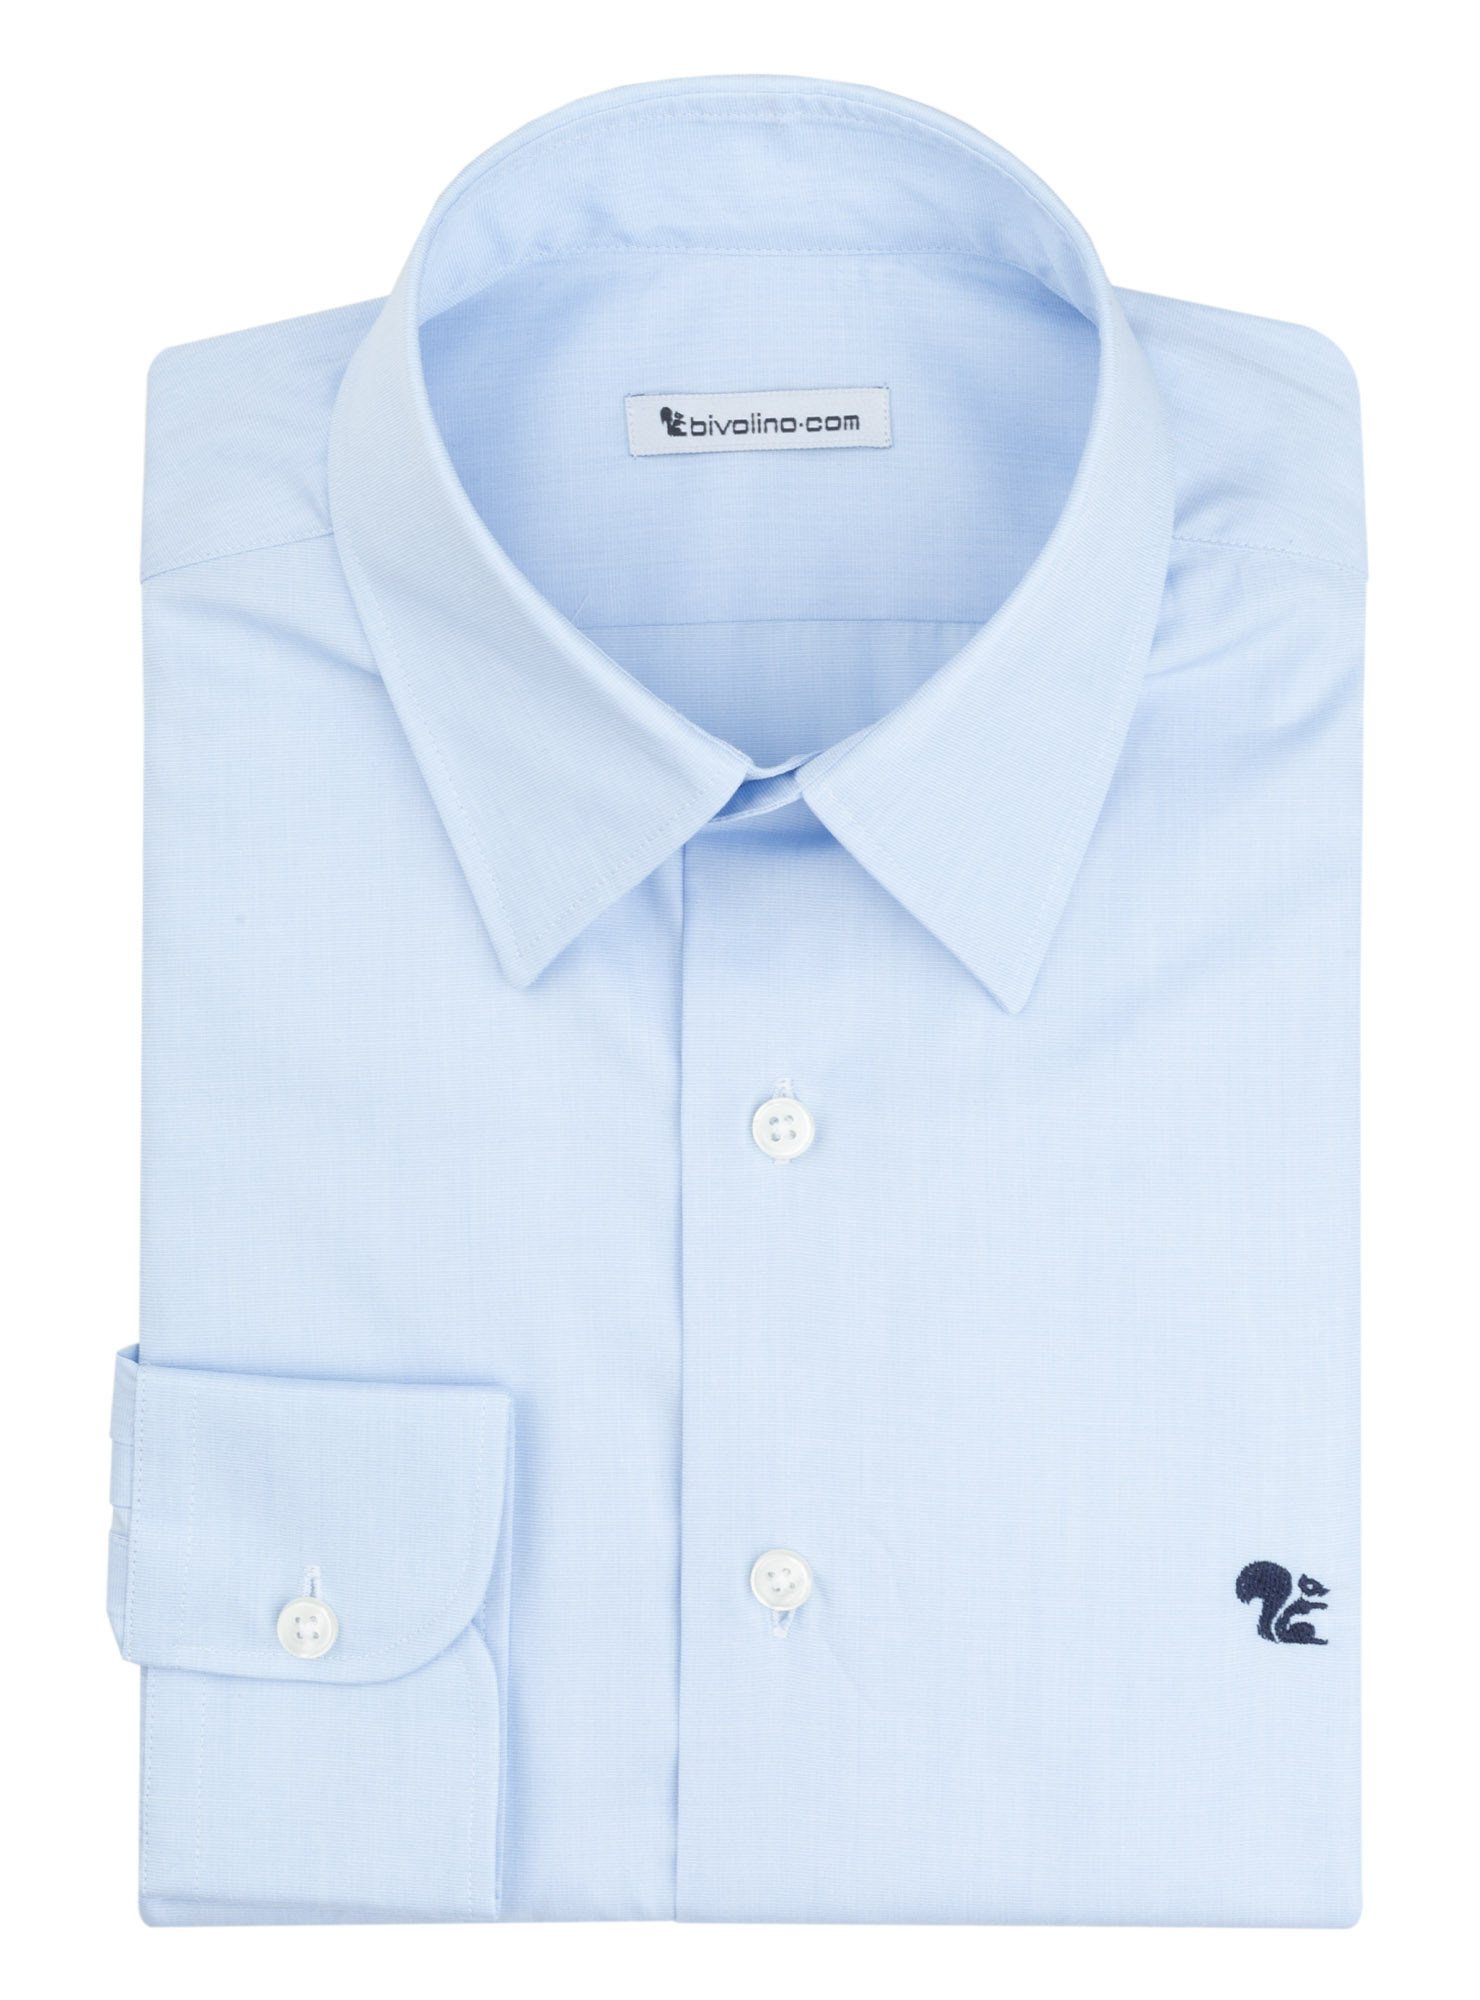 AOSTA - chemise homme Fil-à-fil uni bleu ciel - PARTY 2